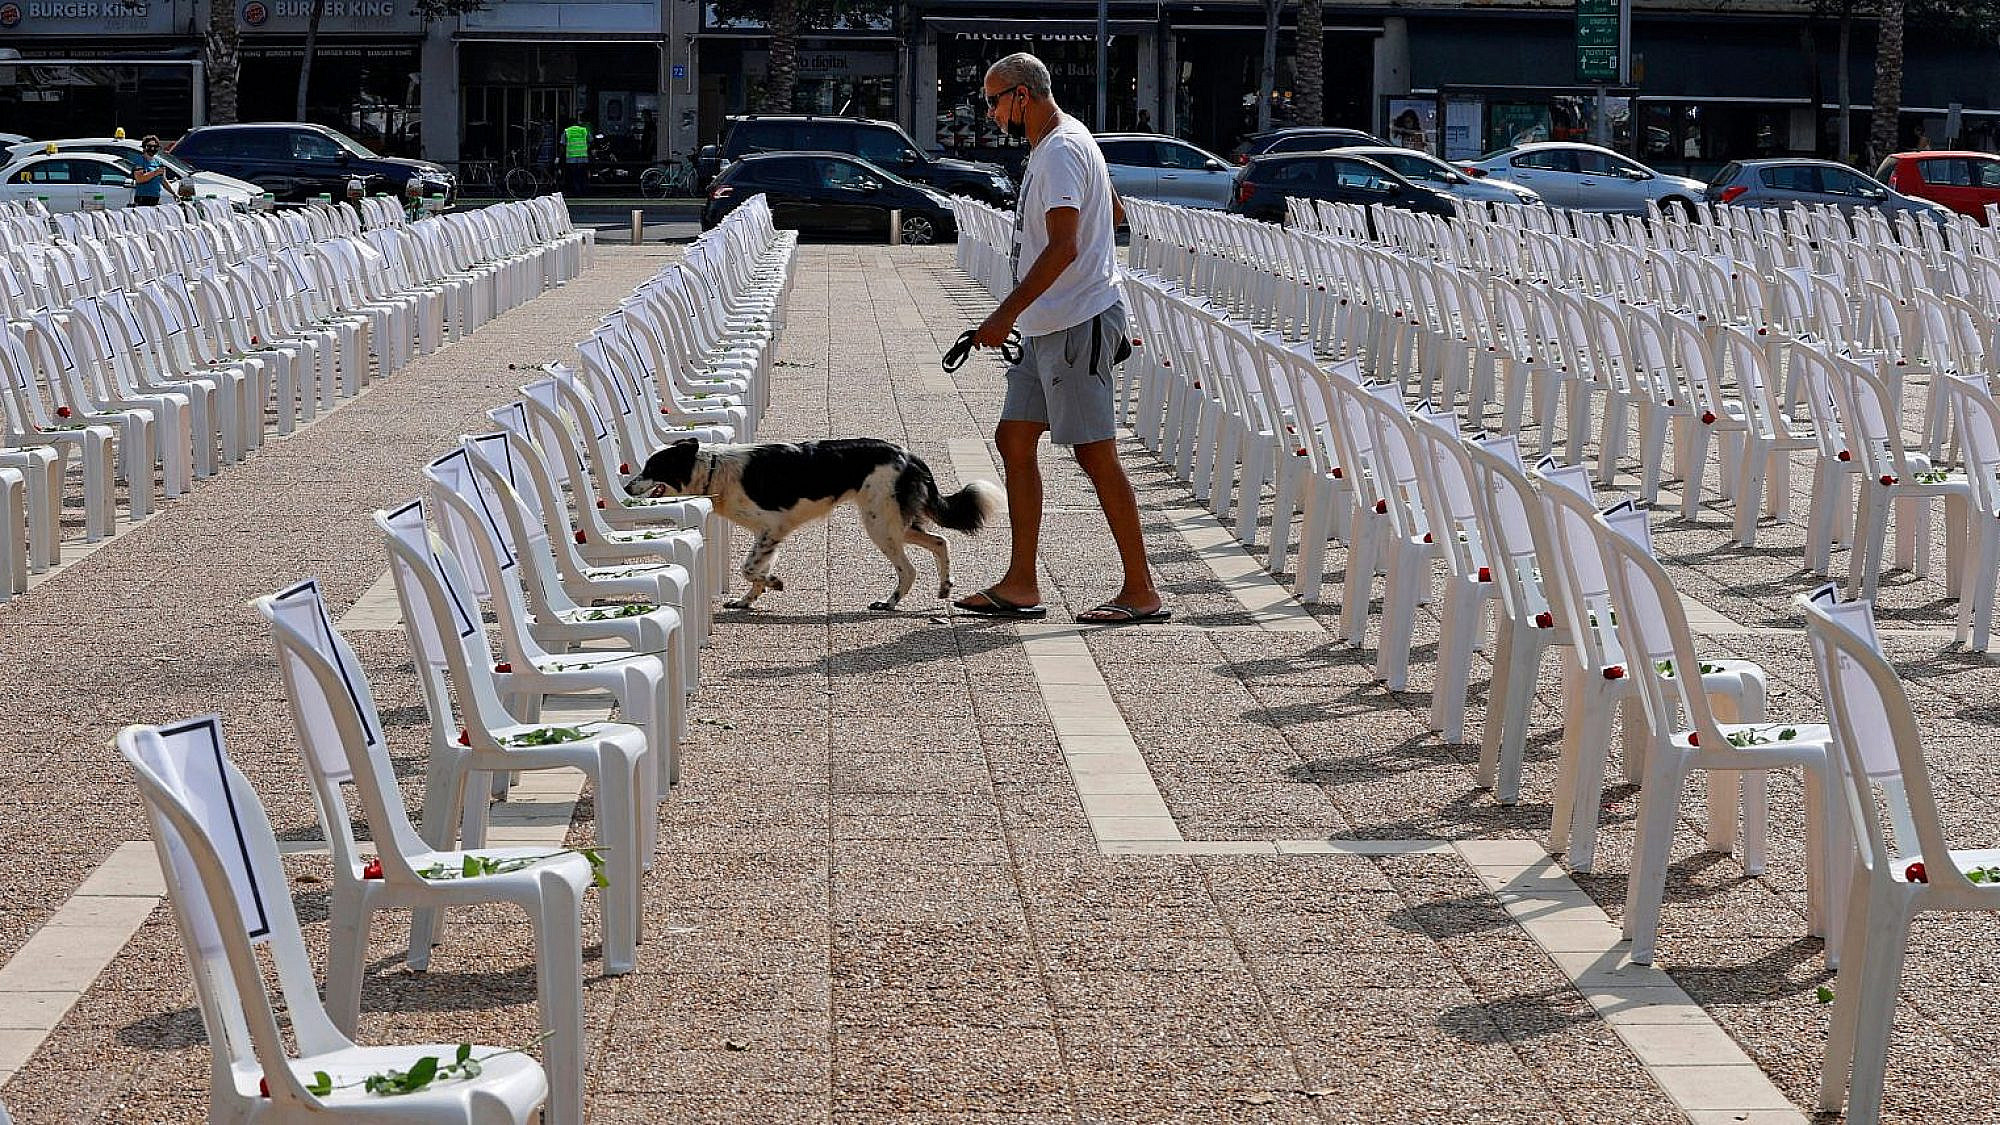 בדרך לעיריה עוצרים לרחרח משהו. כלב בכיכר רבין (צילום: GettyImages)